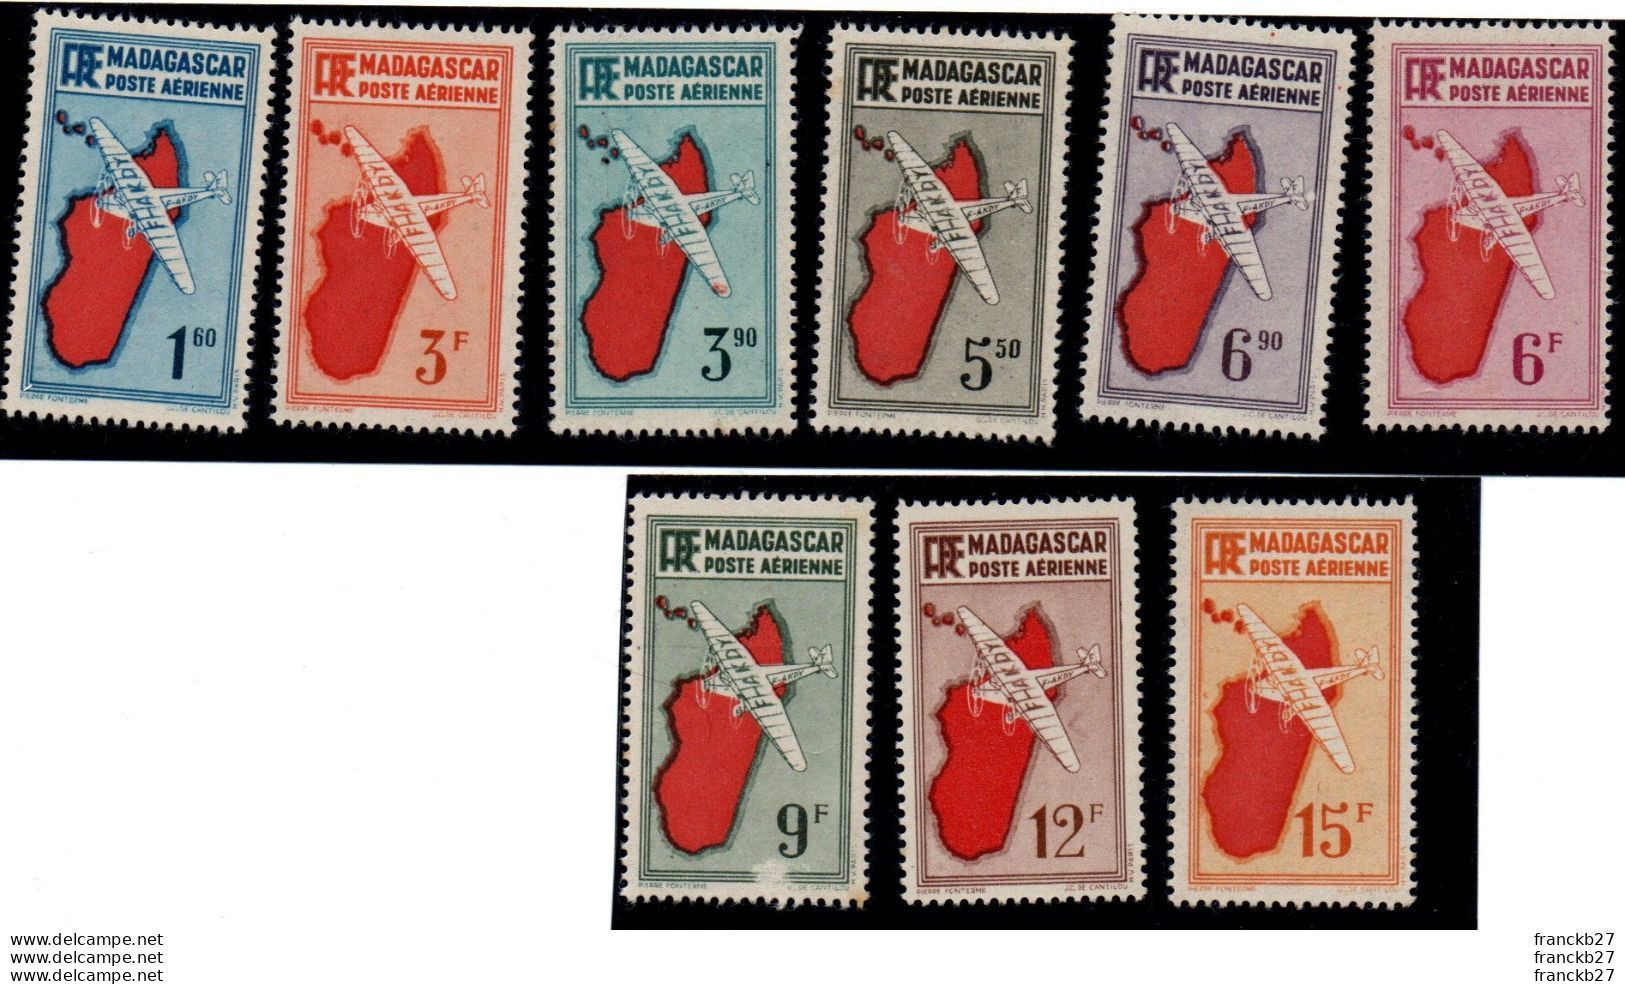 Madagascar - Poste Aérienne - 9 Timbres - 1.6 - 3 3.9 - 5.5 - 6.9 - 6 - 9 - 12 - 15 F - Ungebraucht